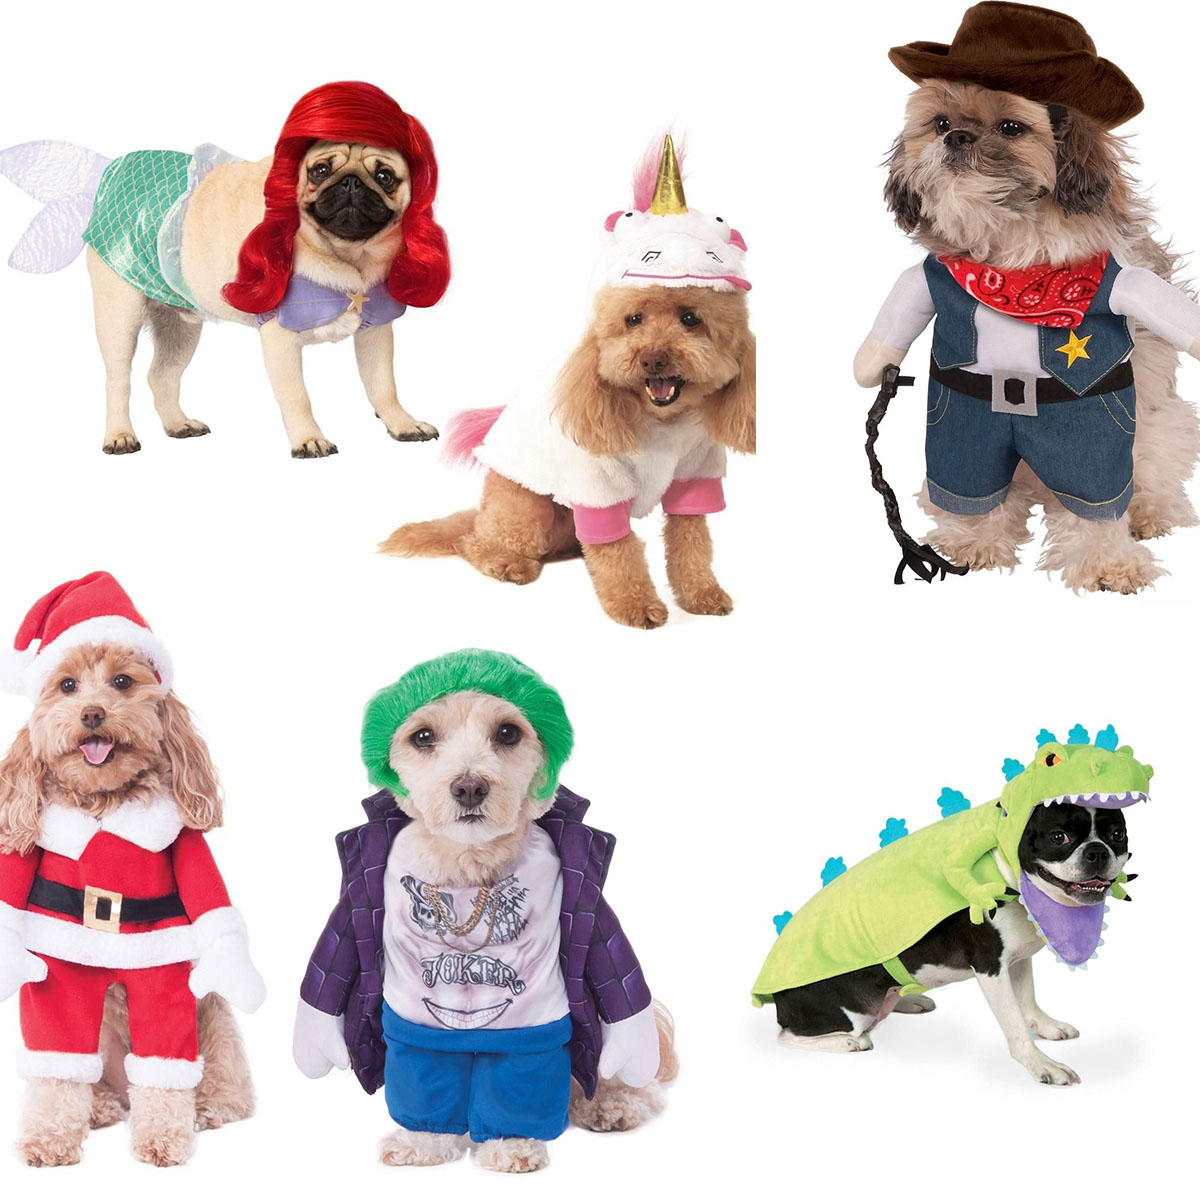 Boo Wow! The Top 10 Freakiest Scariest Halloween Dog Costumes  Dog  halloween costumes funny, Dog costumes funny, Pet halloween costumes